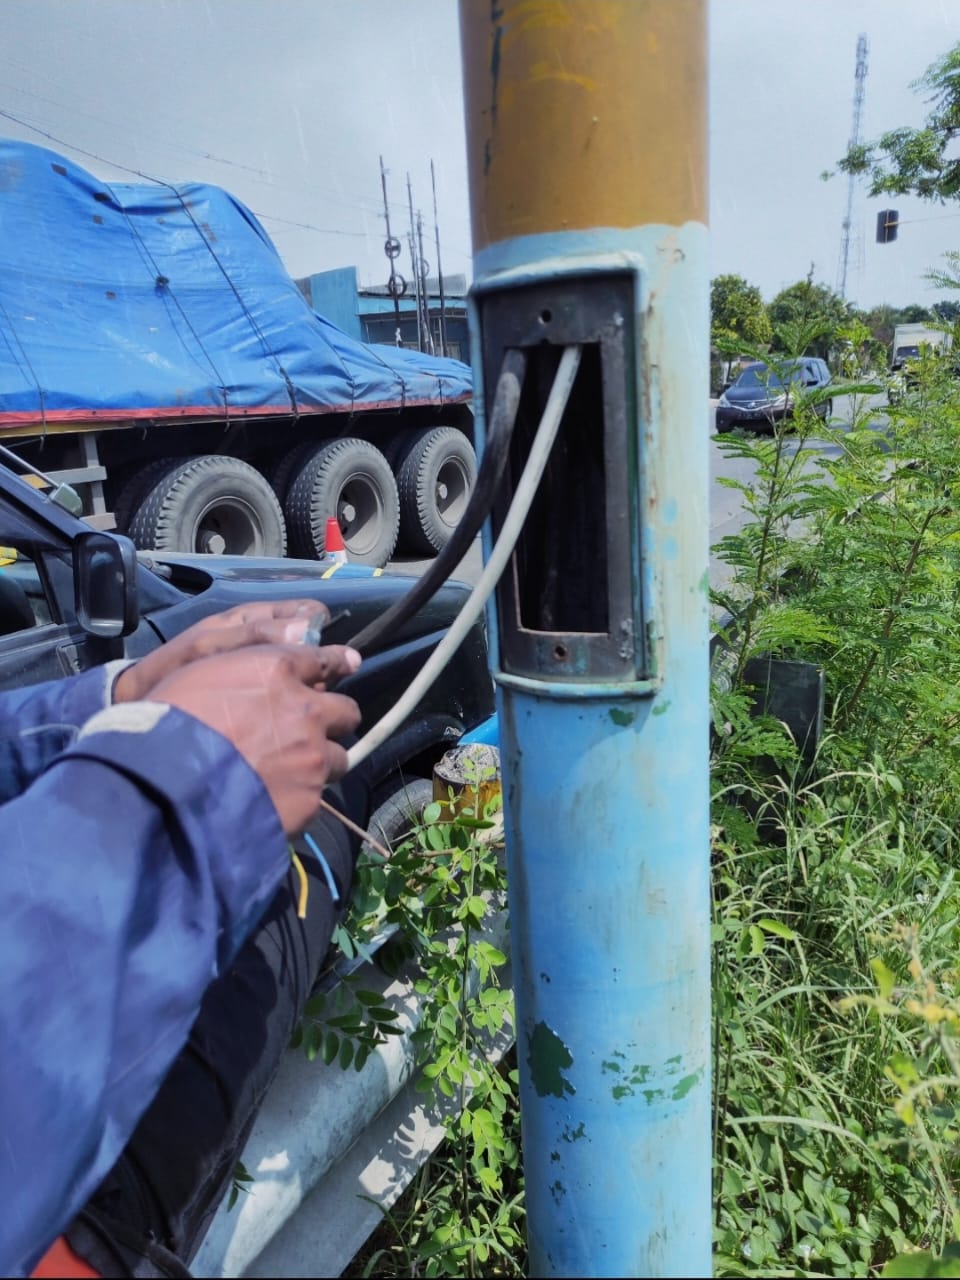 Dinas perhubungan (Dishub) Kabupaten menyebut Traffic Light di wilayah Pati Kota beralih menggunakan baterai karena dinilai lebih ekonomis